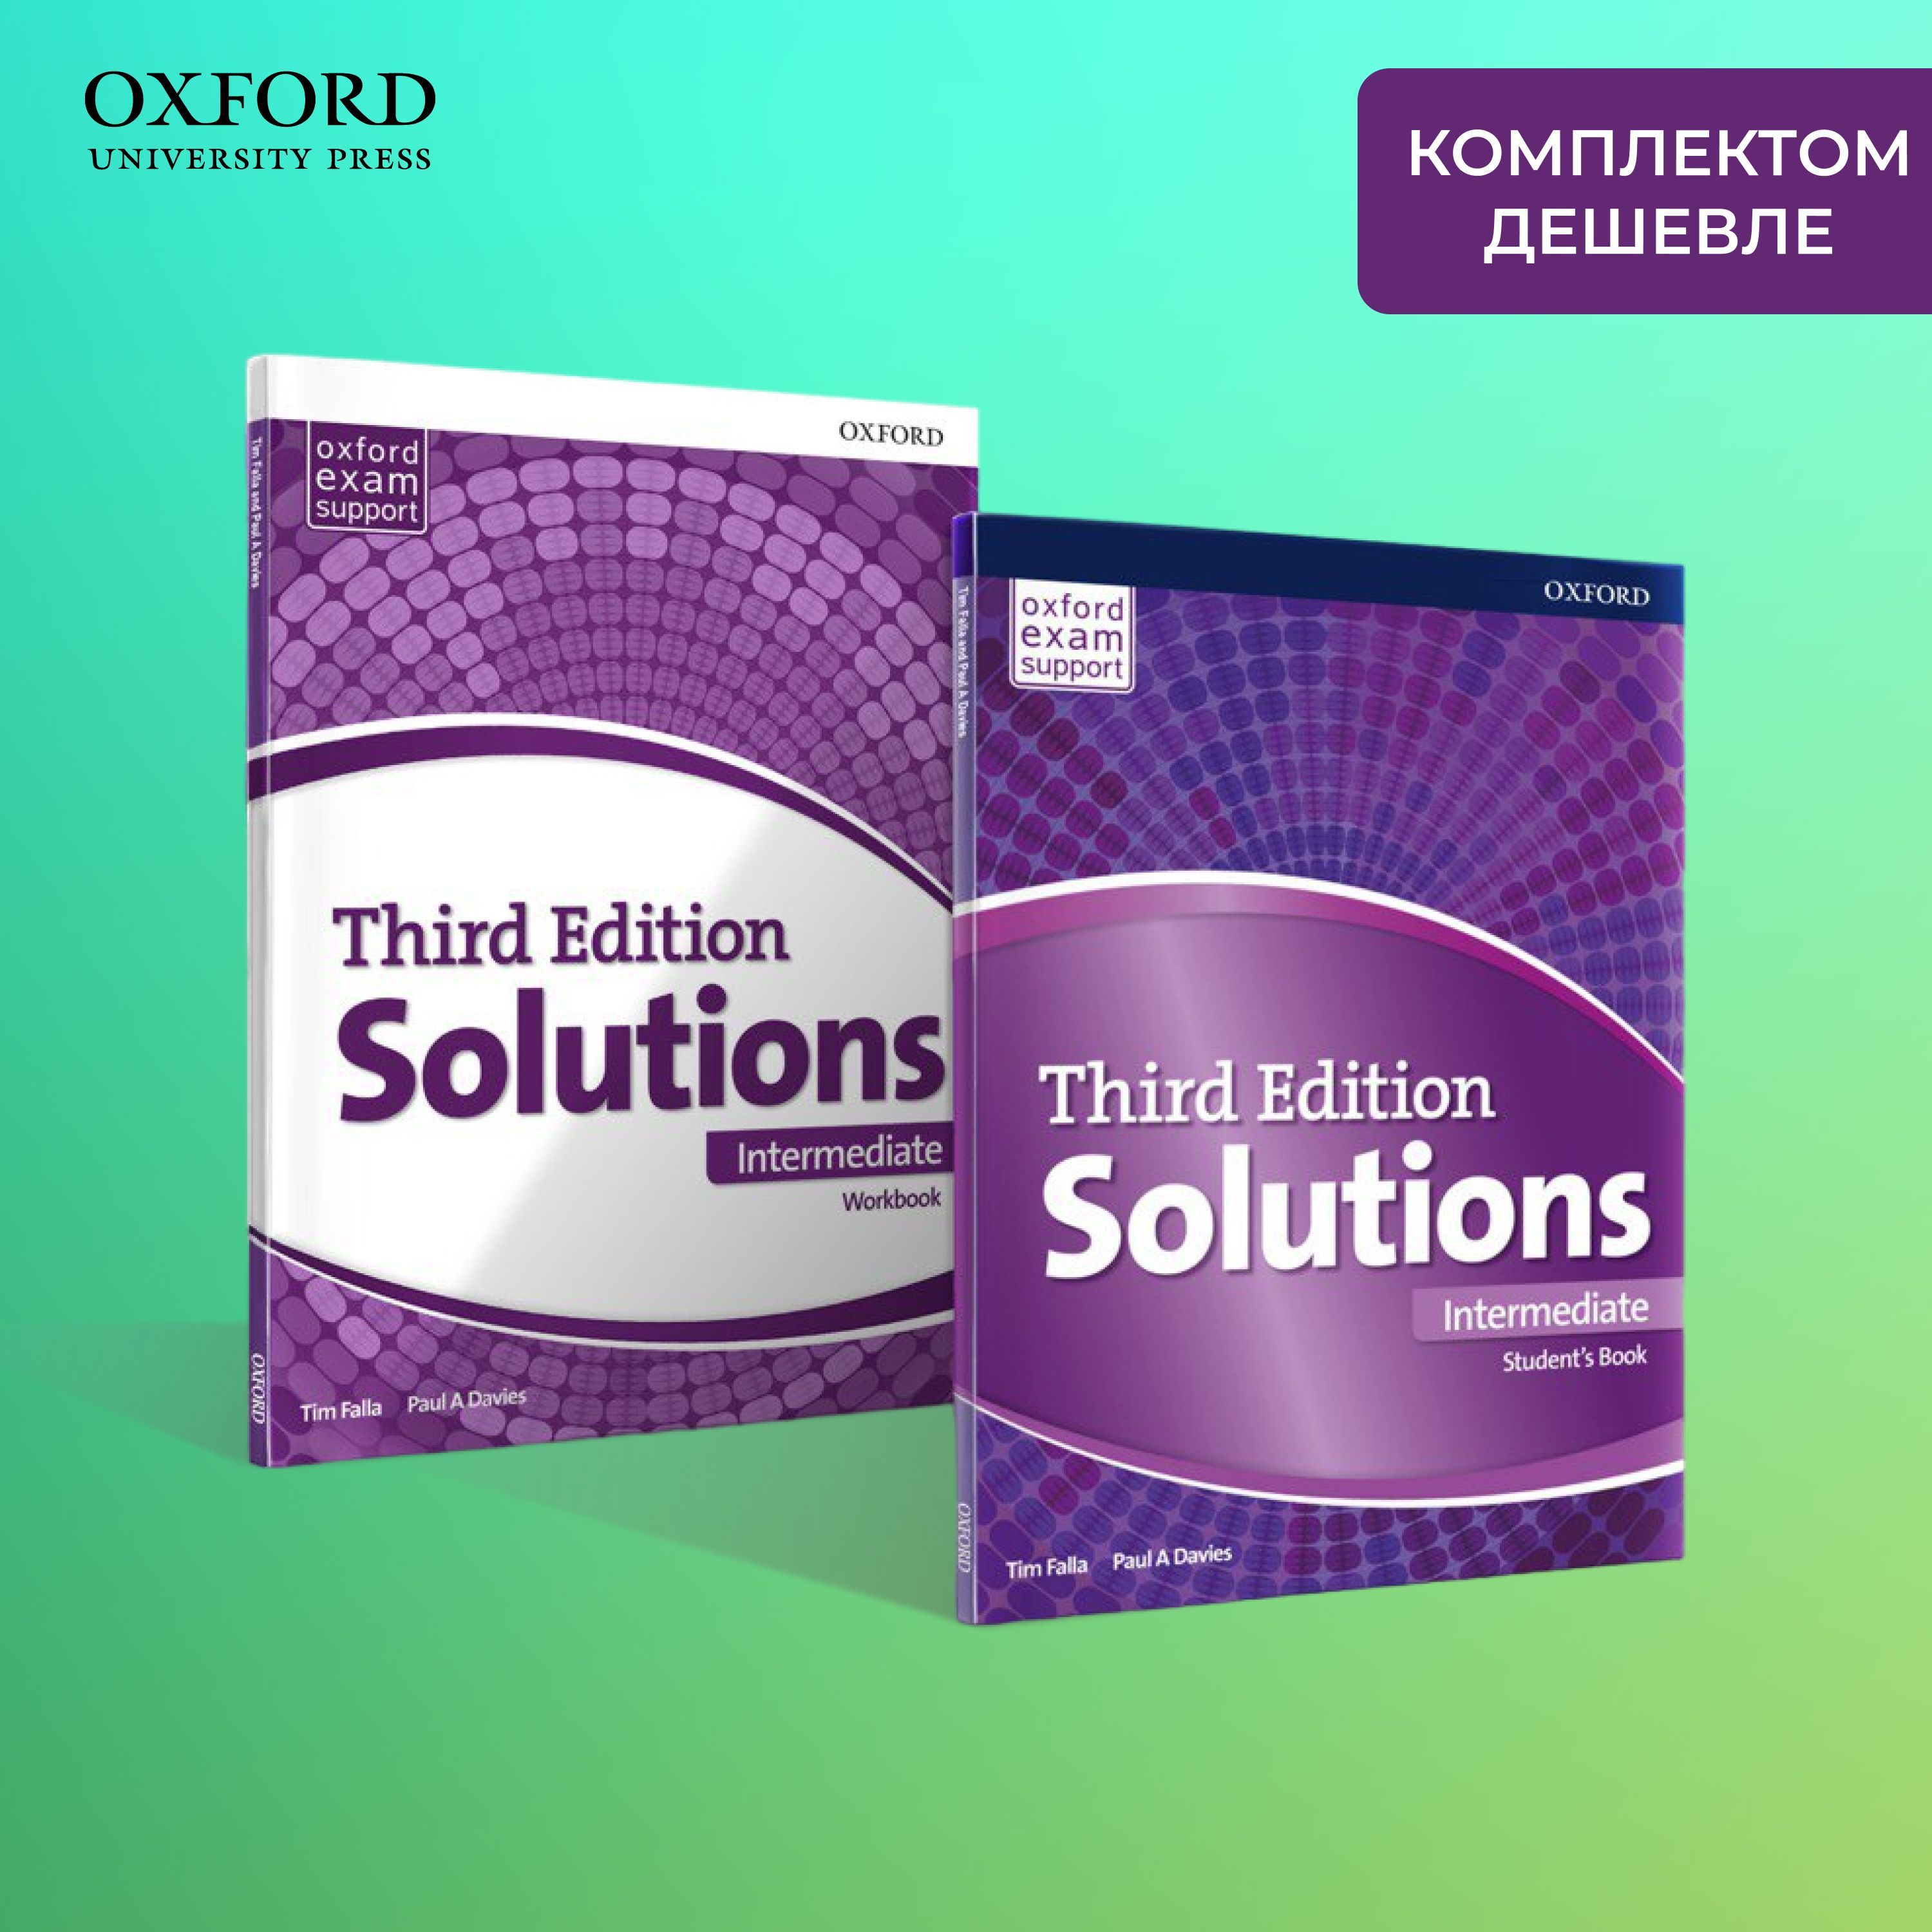 Solutions 3 edition tests. Учебник по английскому языку solutions. Учебник по английскому solutions Intermediate. Third Edition solutions Intermediate Workbook. Solutions Intermediate 3rd Edition.